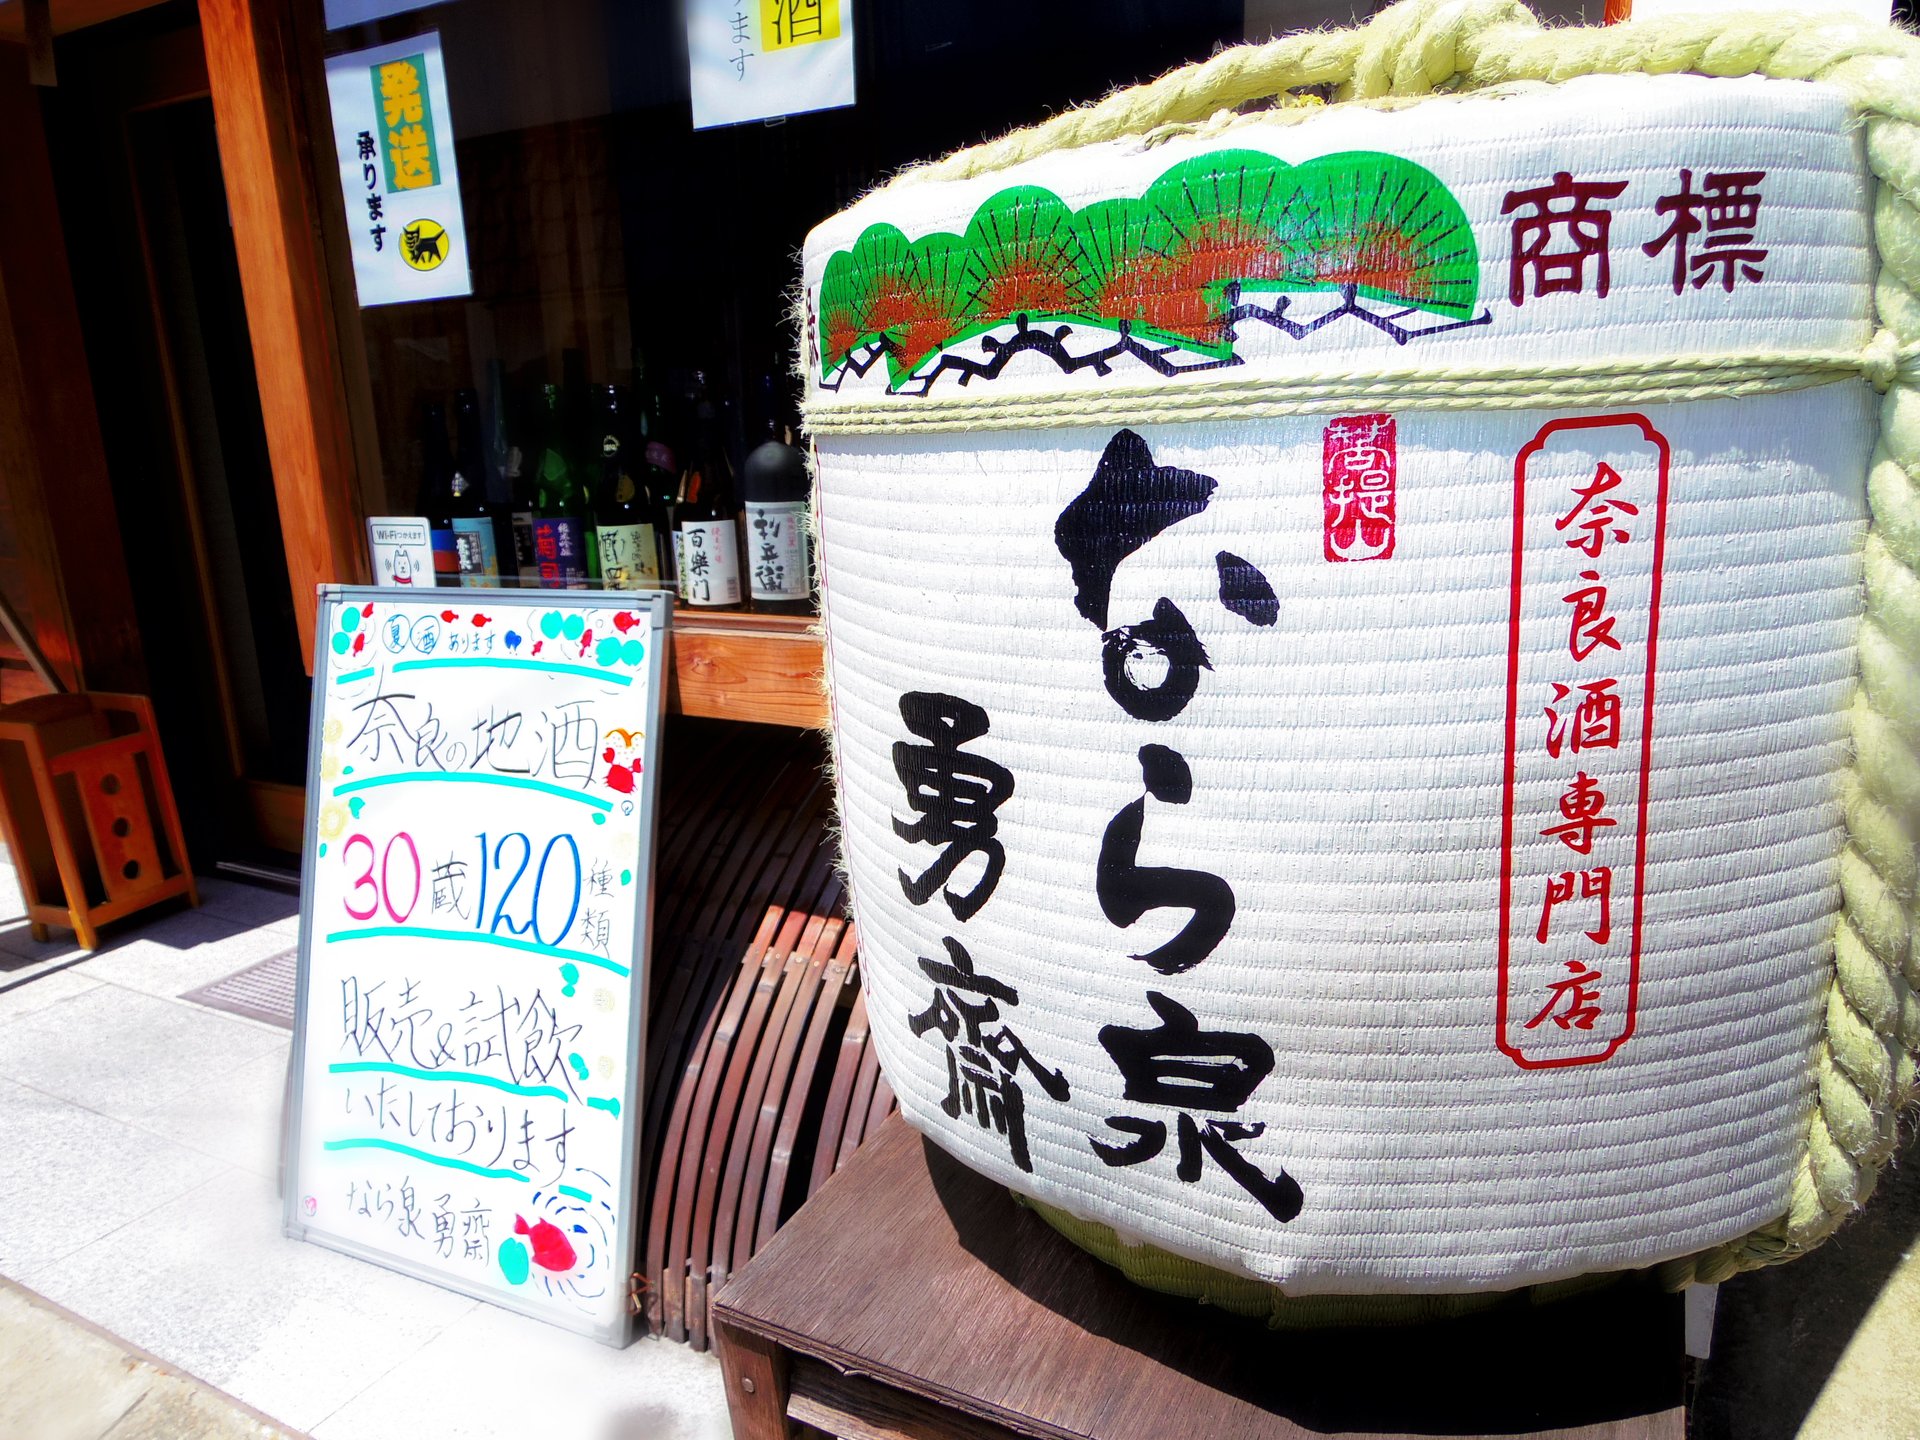 そうだ、日本酒試飲しに奈良へ行こう♪手軽に少しずつ地酒を楽しめるお店3選